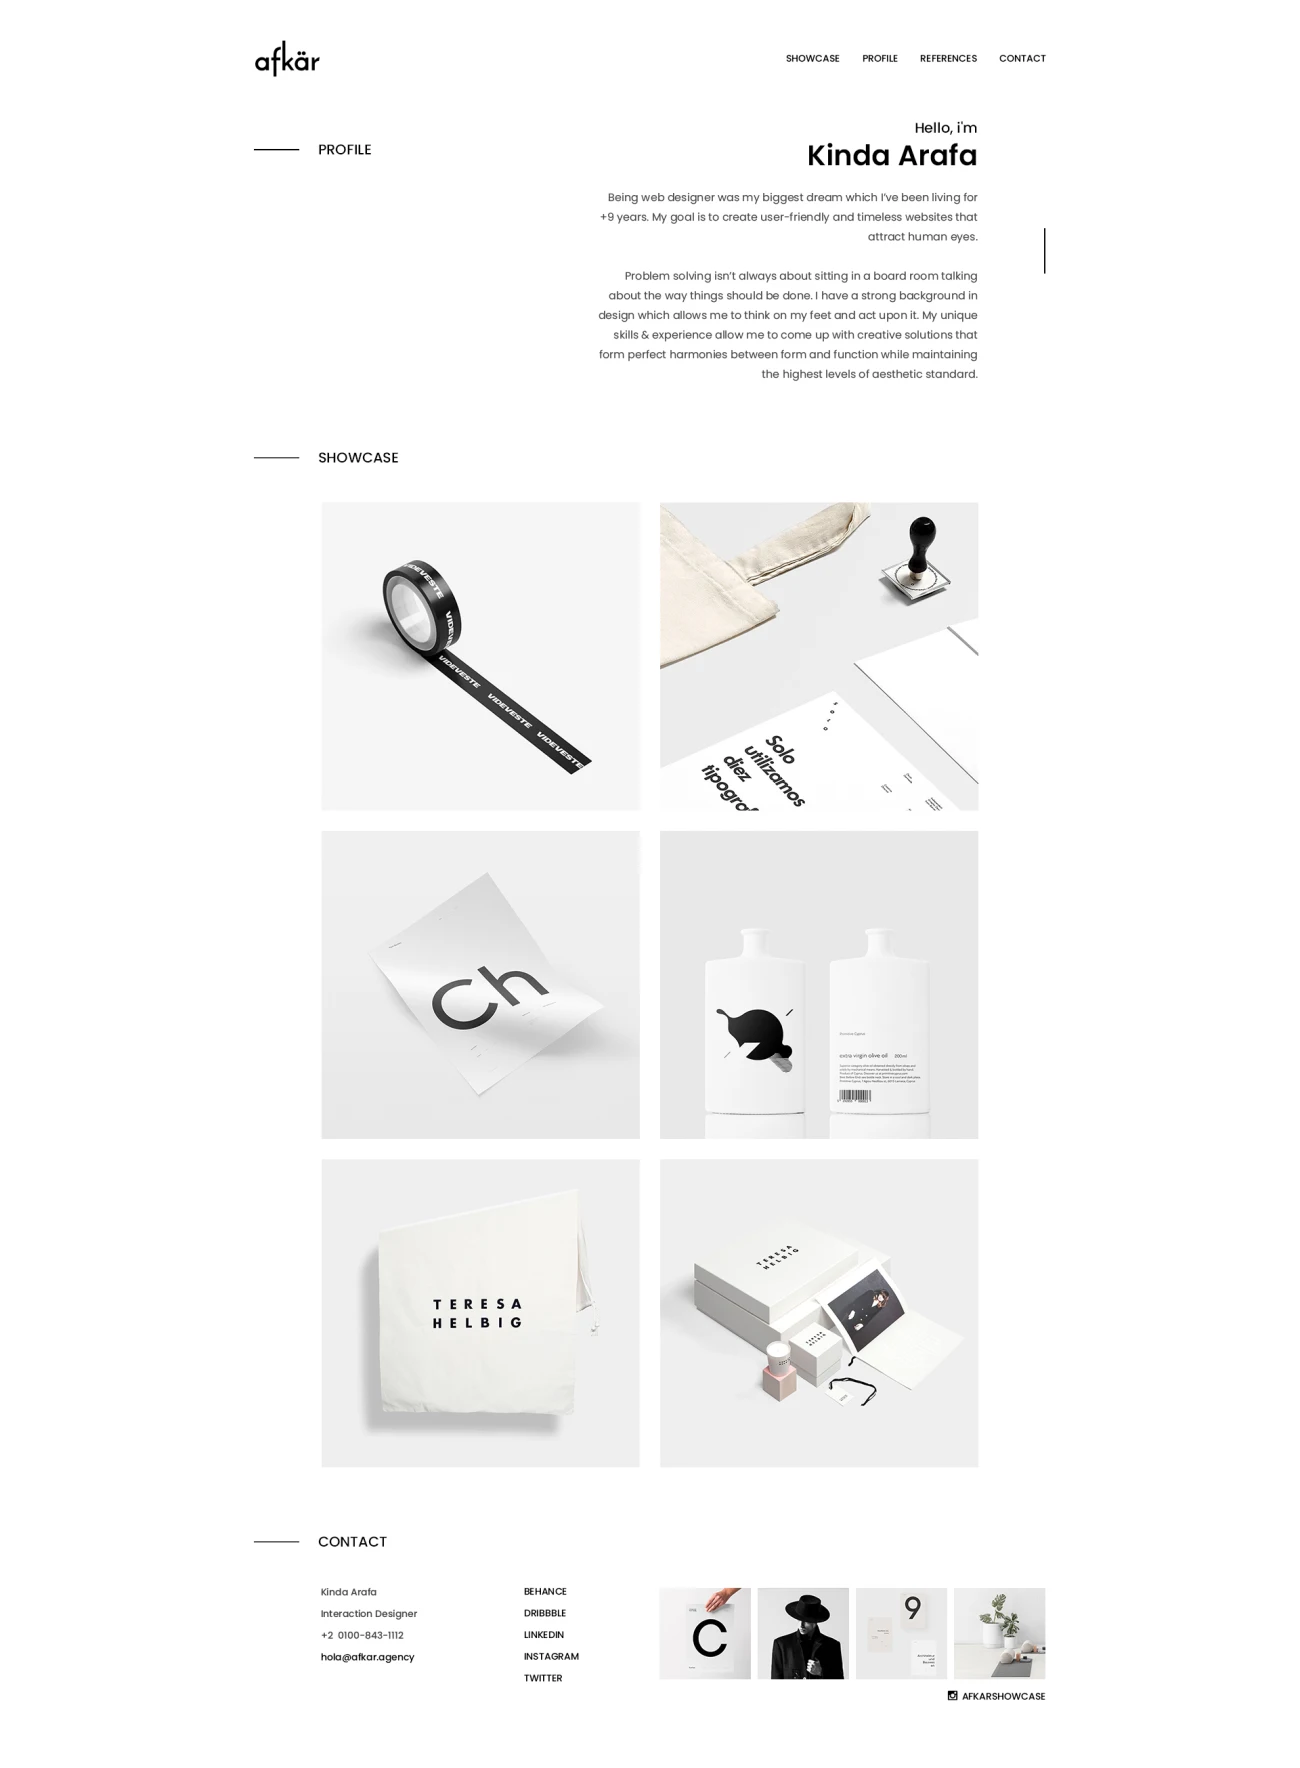 30款摄影设计工作室官网模板素材 Afkar – Agency Website Design PSD Template .psd插图19